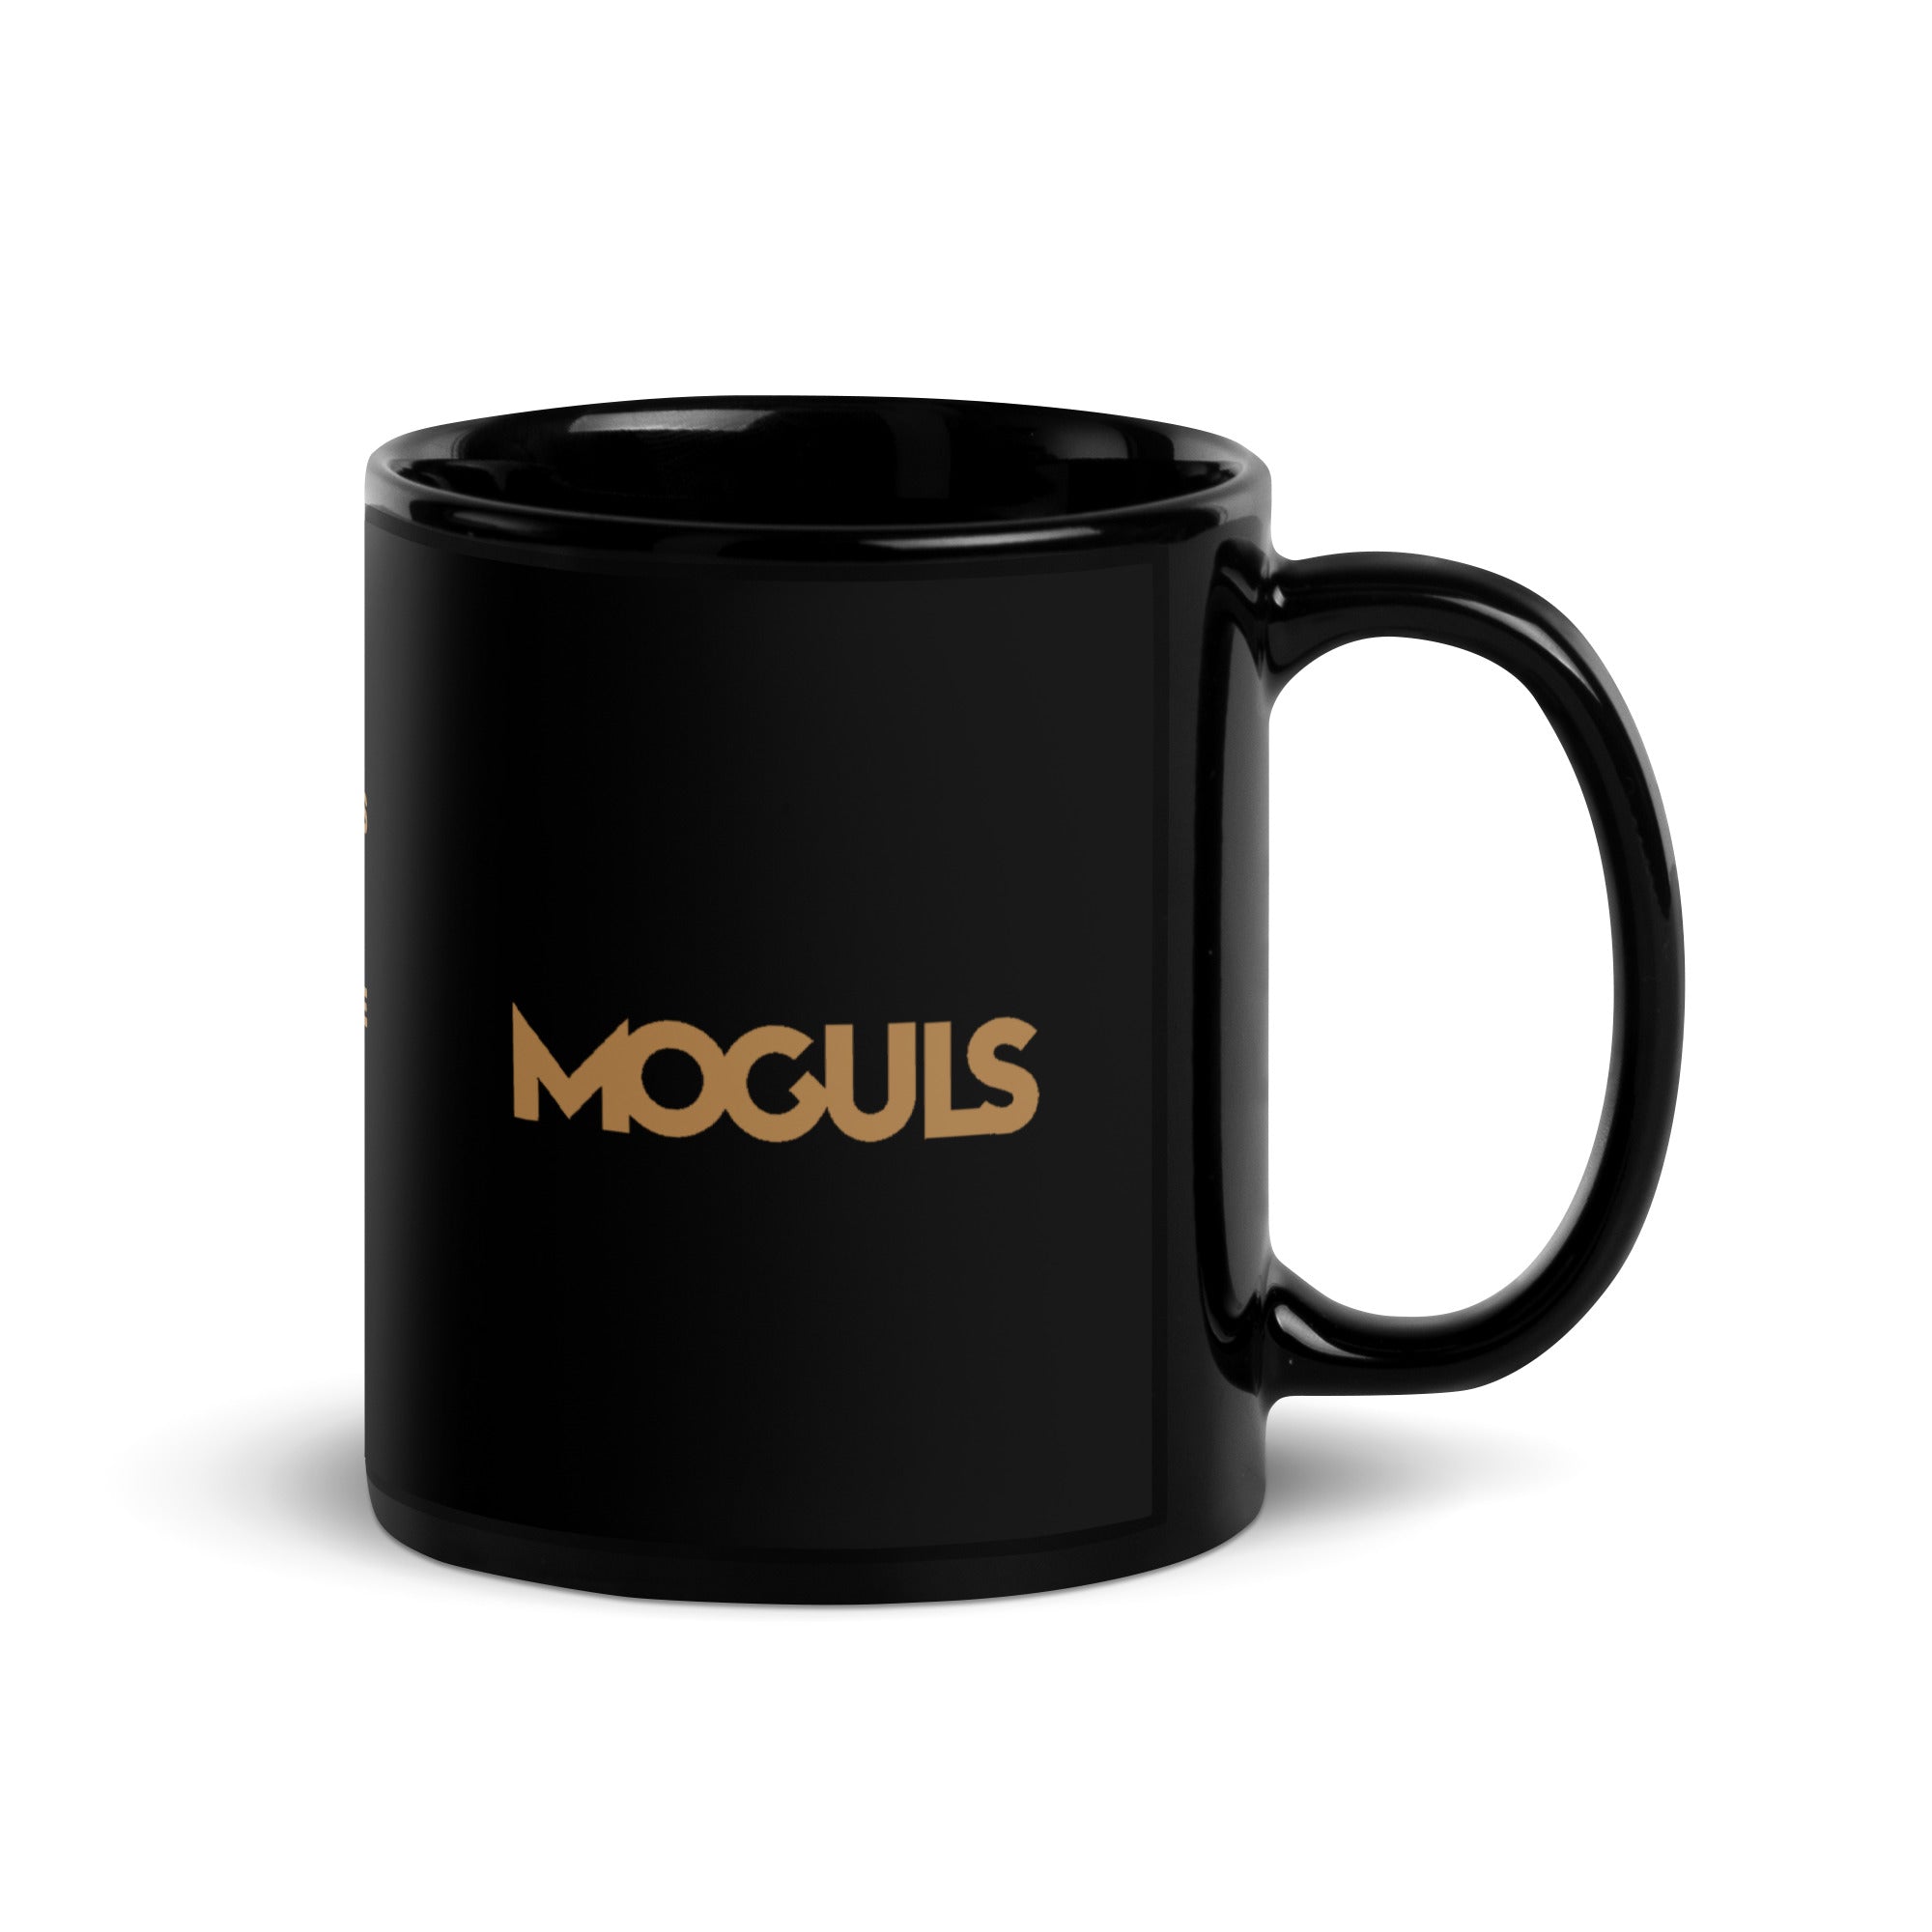 MOGULS Black Mug